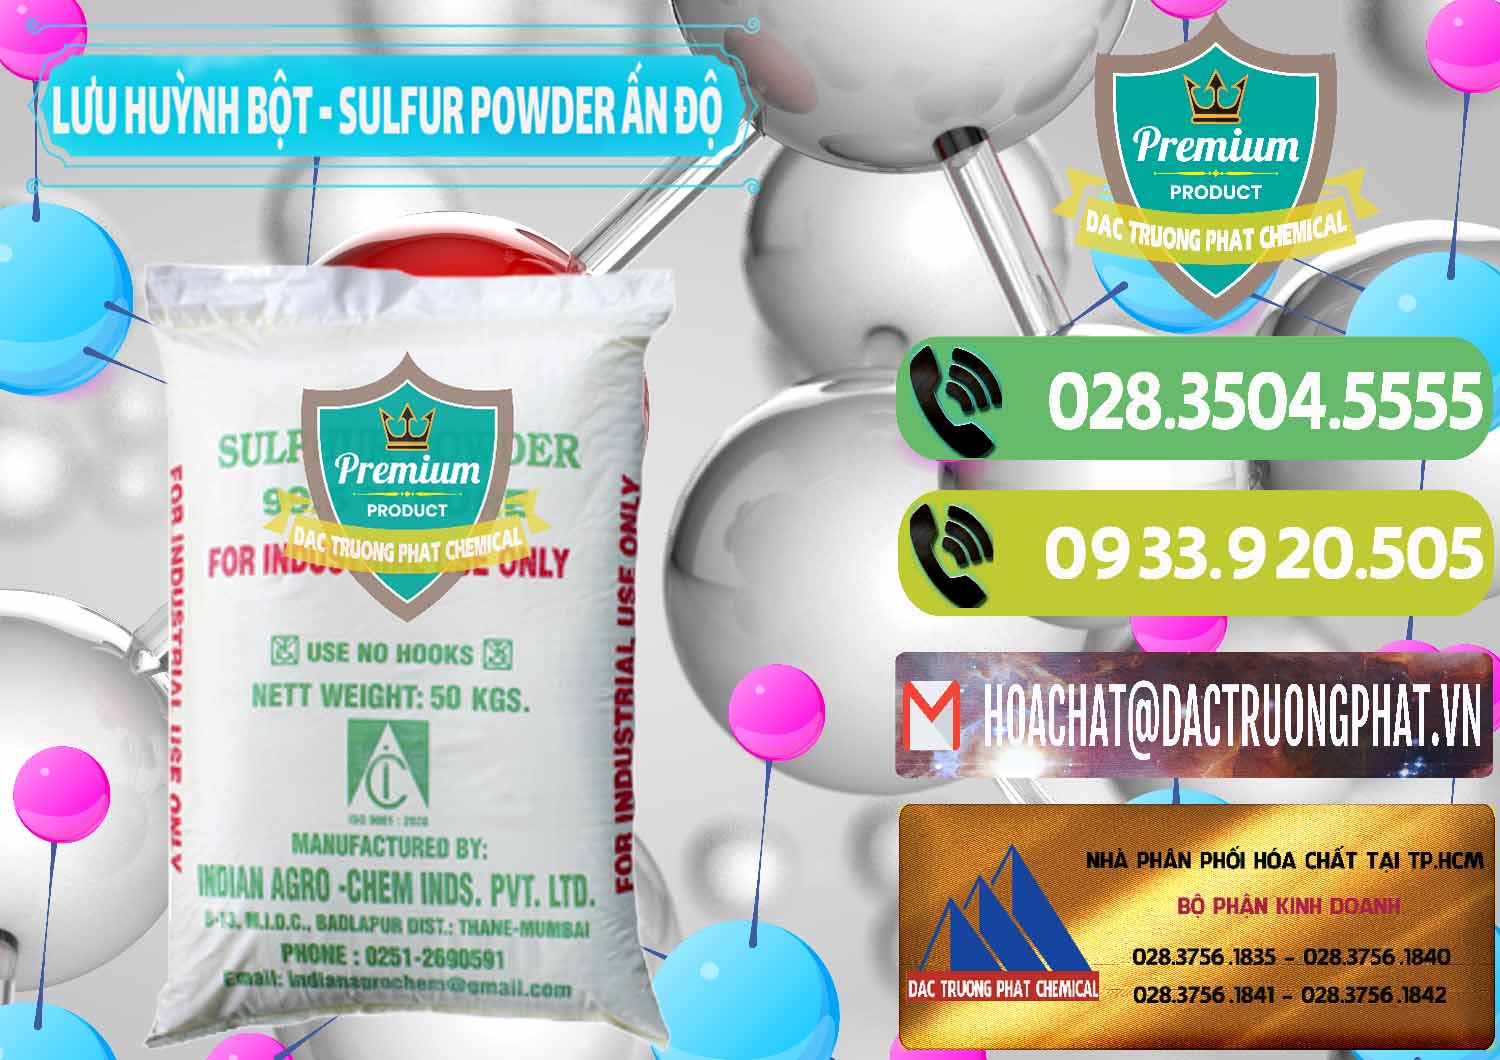 Nơi chuyên nhập khẩu và bán Lưu huỳnh Bột - Sulfur Powder Ấn Độ India - 0347 - Công ty kinh doanh - phân phối hóa chất tại TP.HCM - hoachatmientay.vn